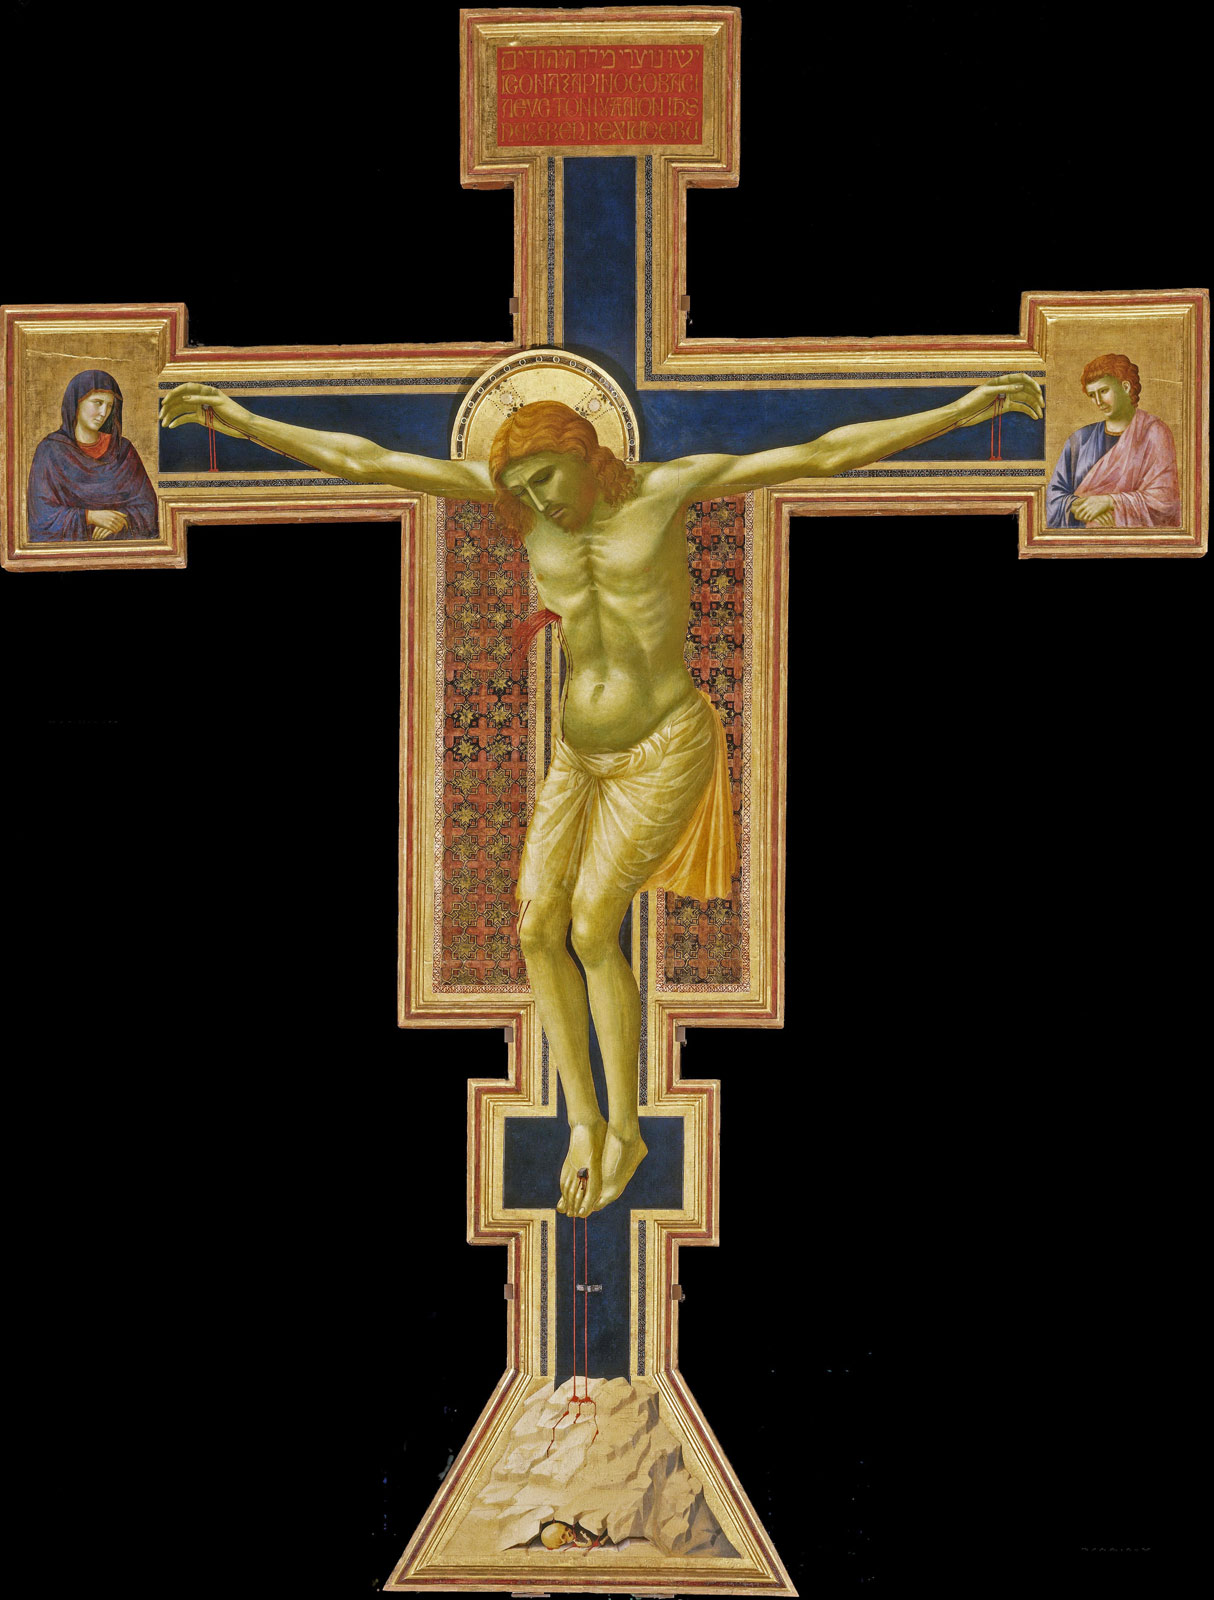 Giotto, Crocifisso di Santa Maria Novella (1290-1295; tempera su tavola, 578 x 406 cm; Firenze, Santa Maria Novella)
